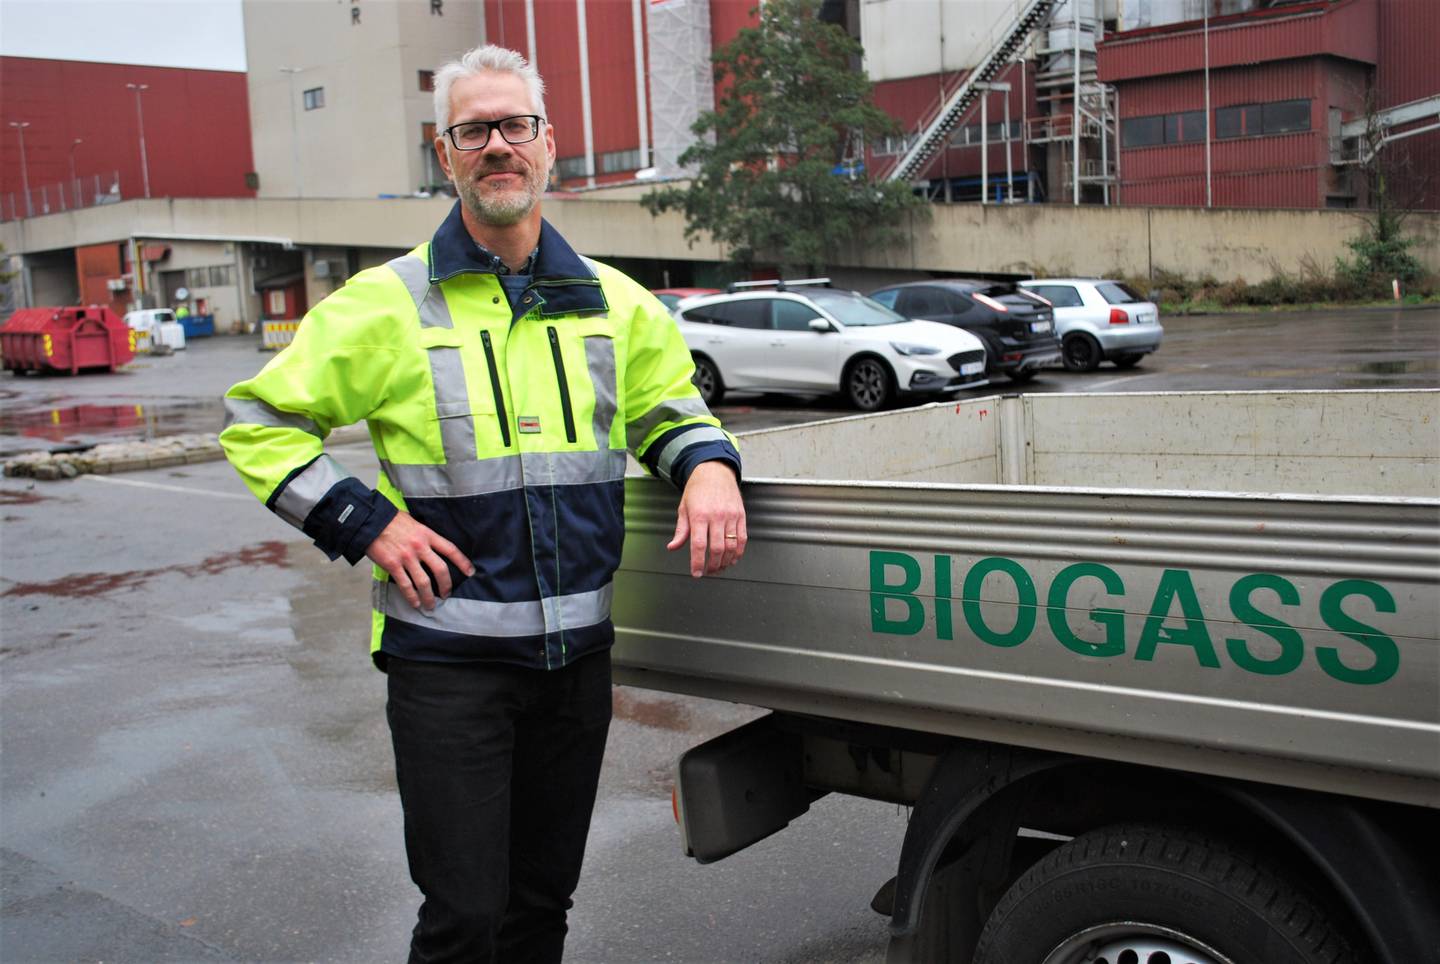 Frevar produserer i dag både biogass og annen klimavennlig energi, men direktør Fredrik Hellström fastslår at de hele tida har ambisjoner om å strekke klimaarbeidet enda lenger. Nå håper han deltakelsen i nettverket Klimapartnere Østfold skal hjelpe dem på den veien, og samtidig synliggjøre for innbyggerne den jobben de allerede gjør.